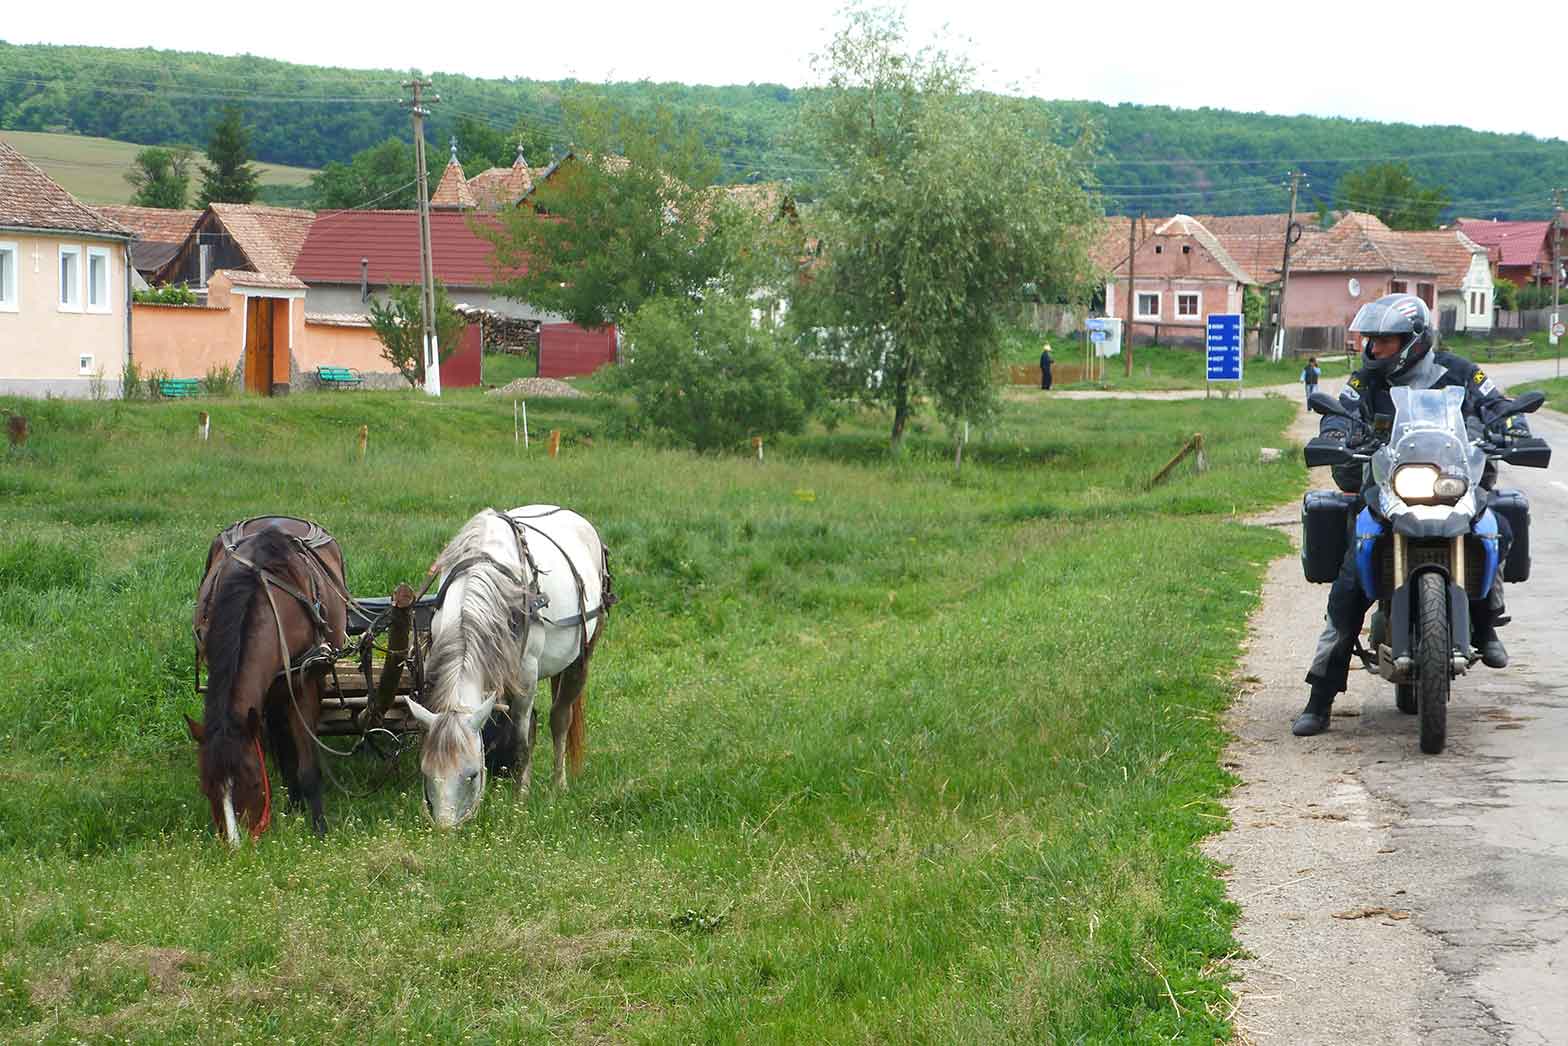 Romania countryside